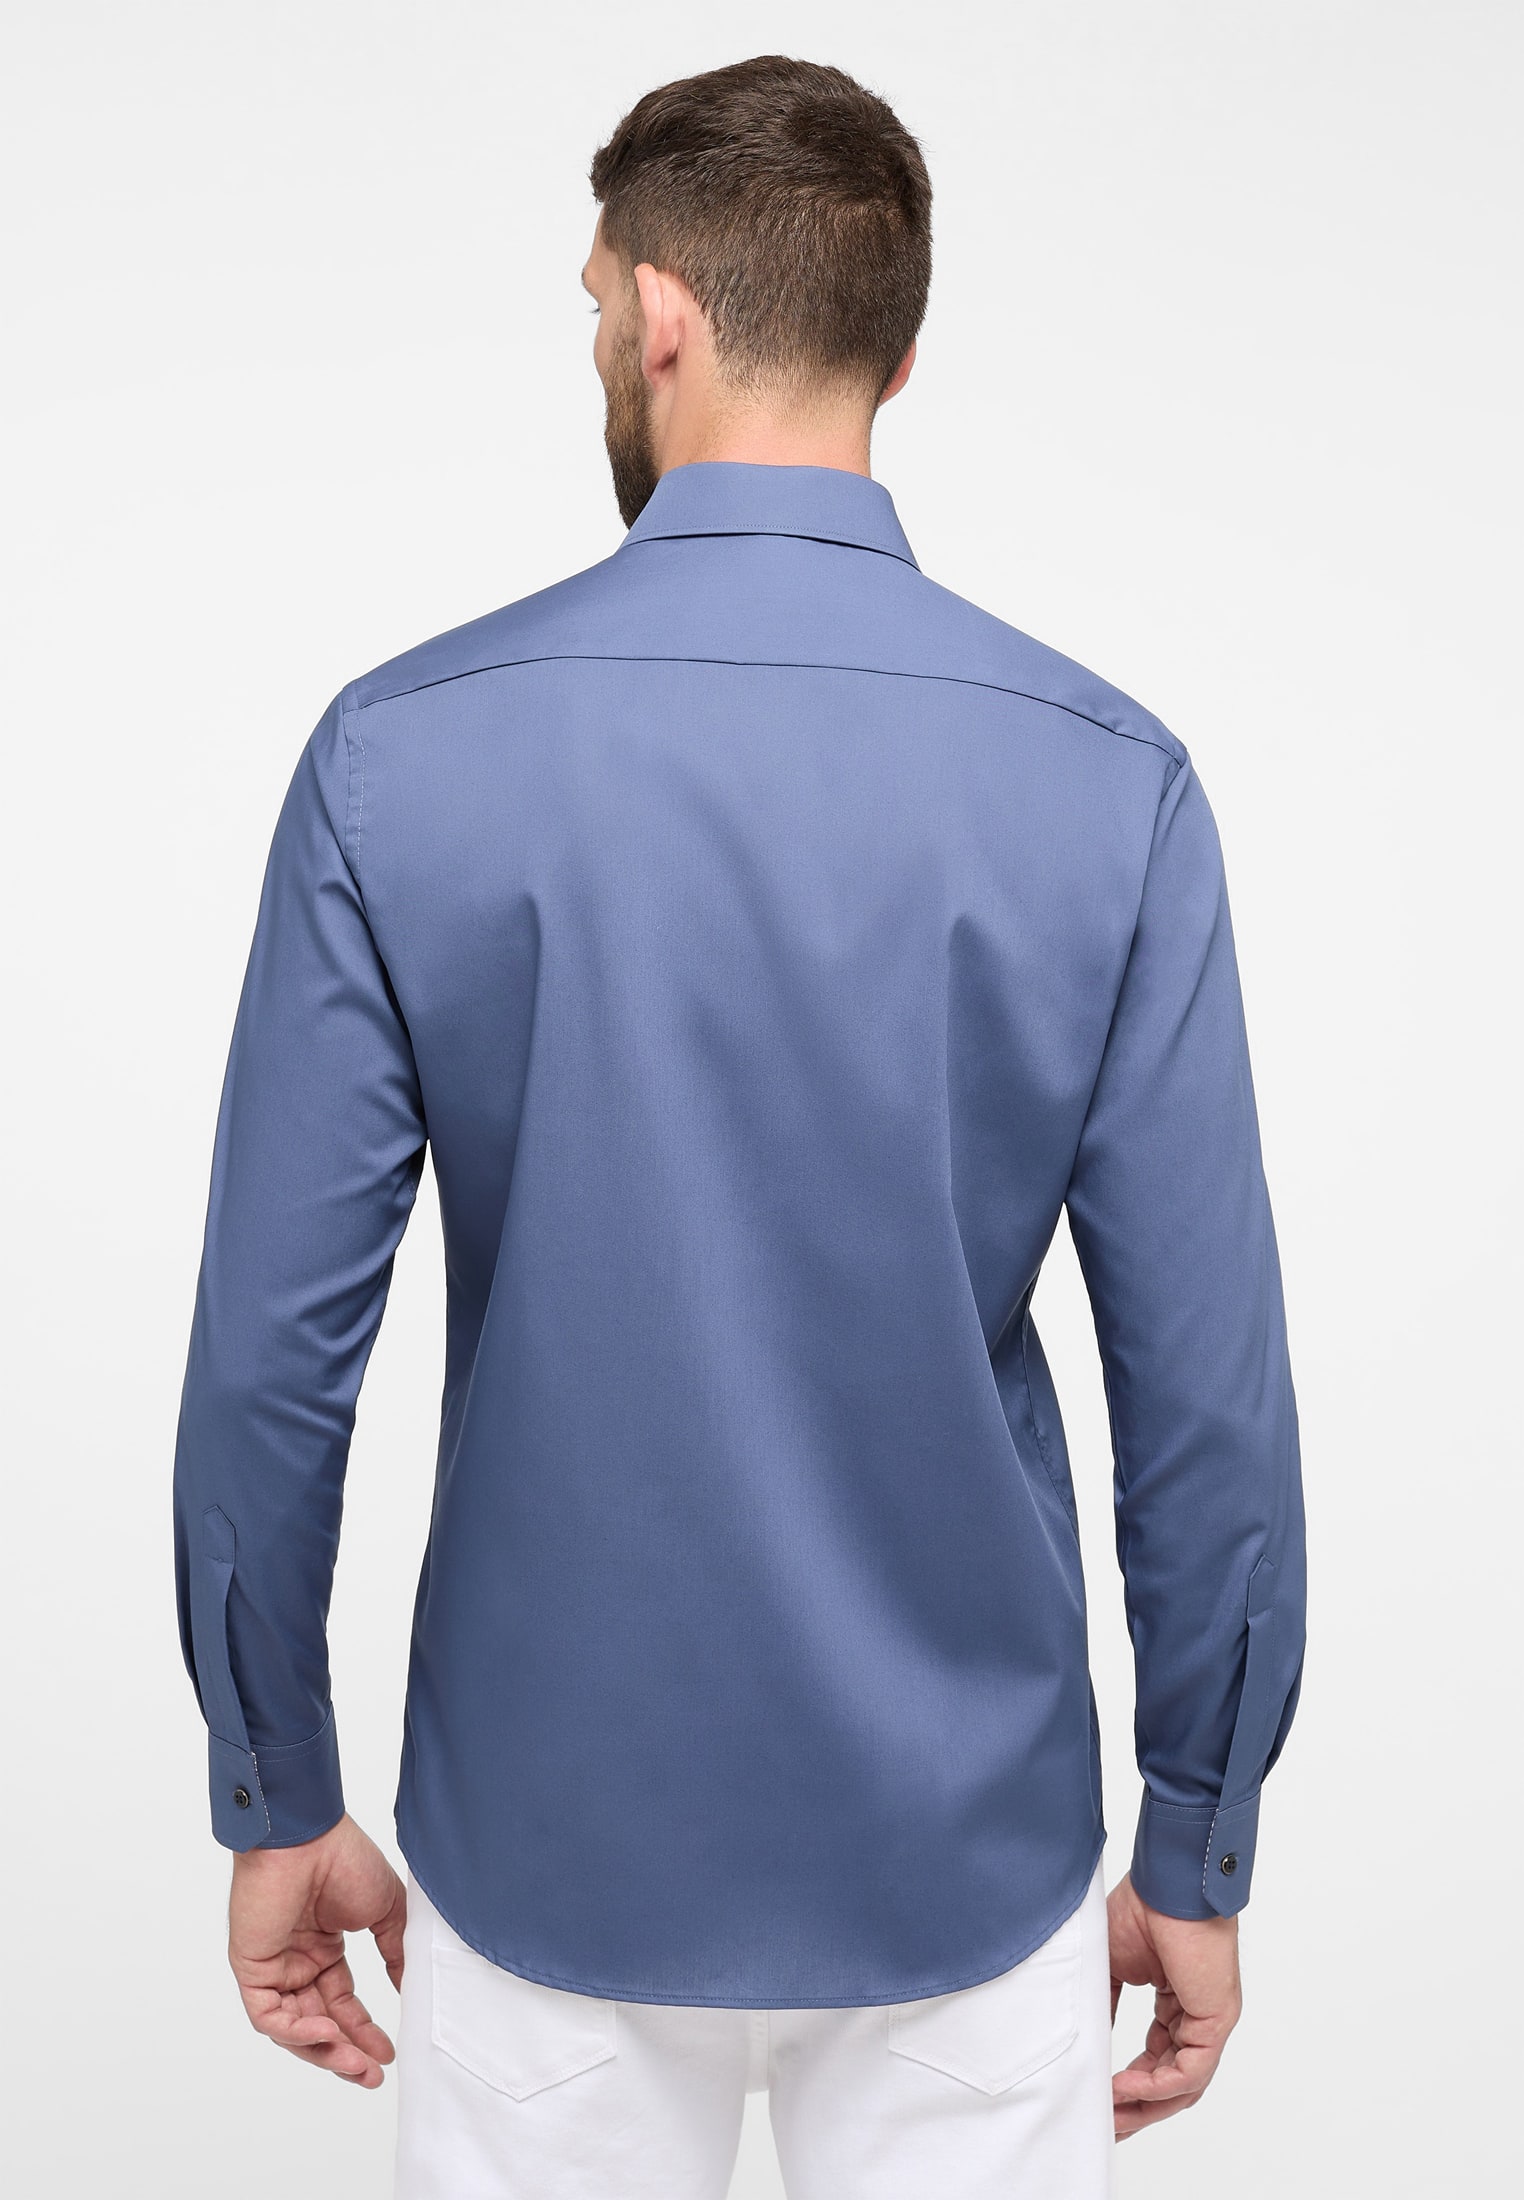 MODERN FIT Original Shirt in rauchblau unifarben | rauchblau | 40 | Langarm  | 1SH11722-01-62-40-1/1